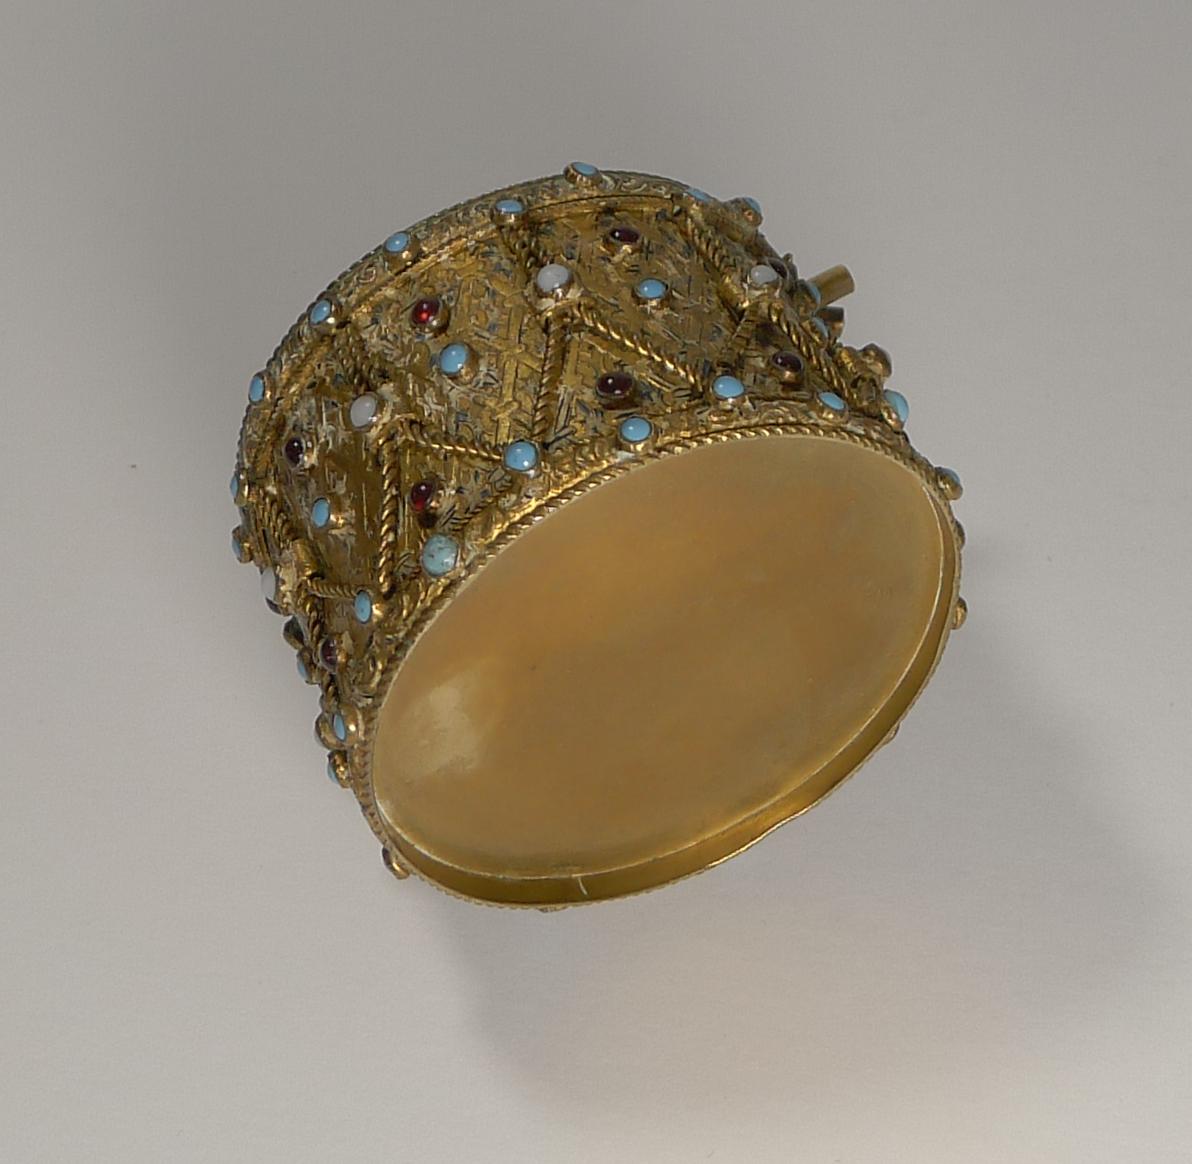 Une boîte de fantaisie très inhabituelle de la fin du 19e siècle en forme de tambour, fabriquée en laiton doré et sertie d'une sélection de turquoises, d'opales et de grenats en faux cabochon.

Les manches des deux baguettes se drapent sur le côté